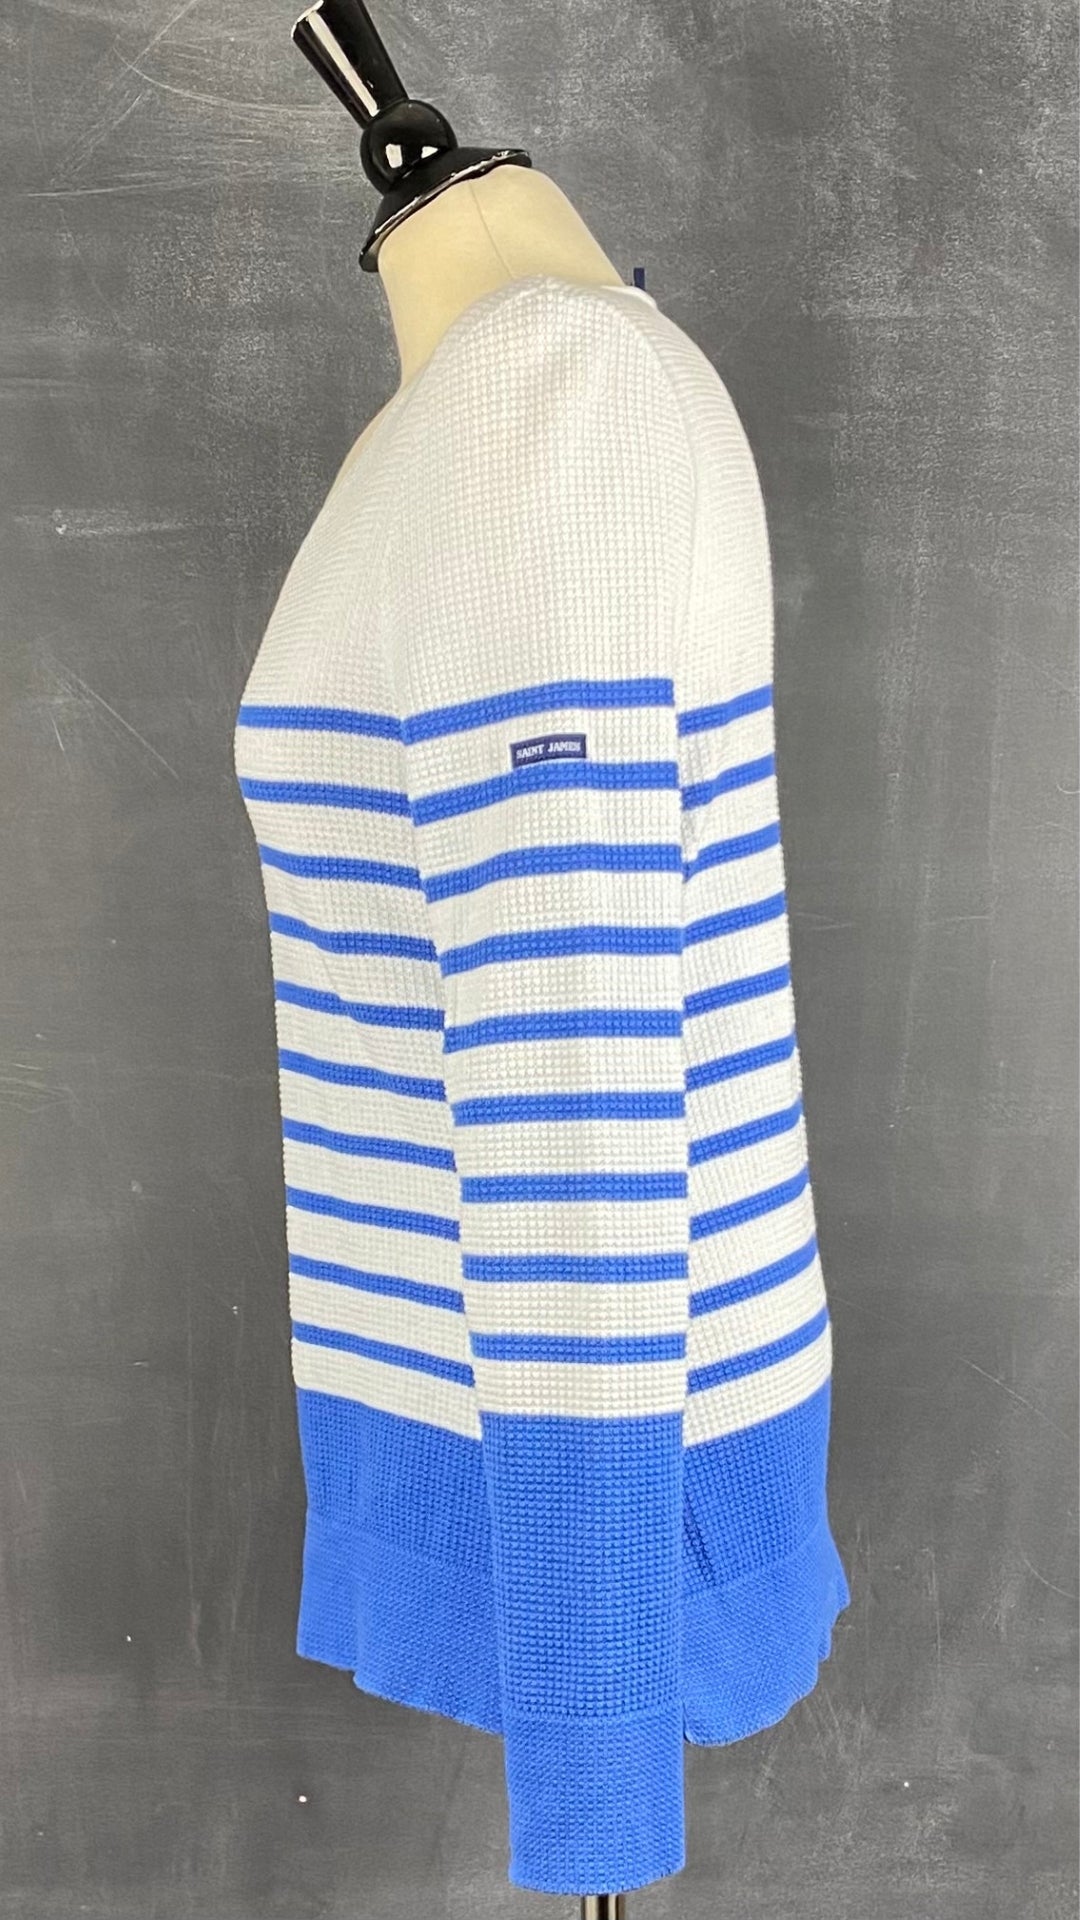 Chandail marinière en tricot de coton à rayures bleues Saint James, taille 6 (small). Vue de côté.